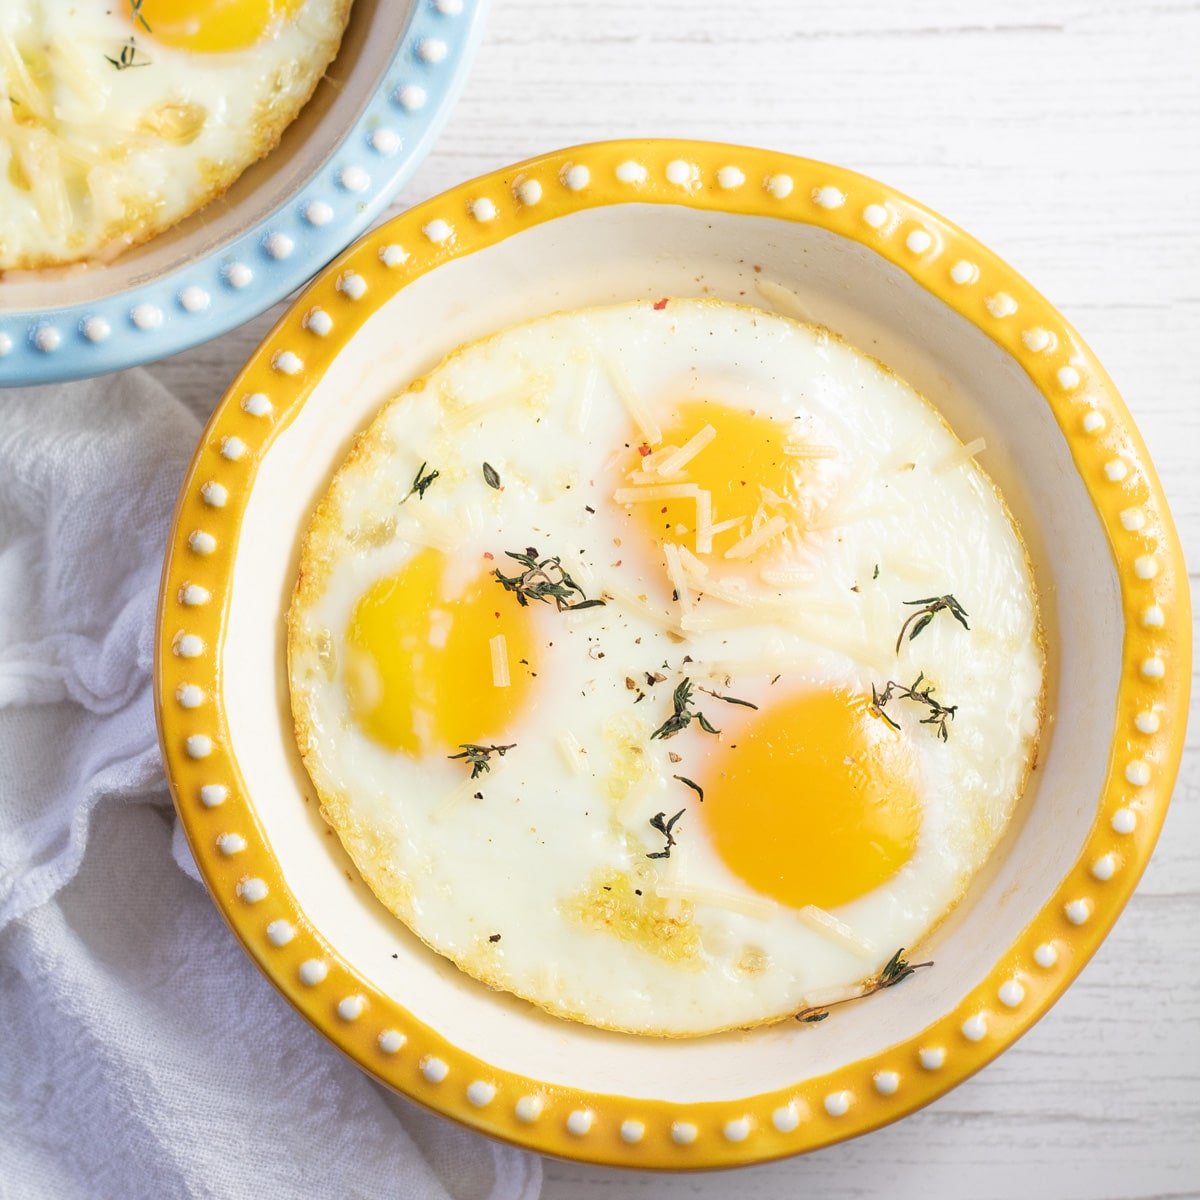 उथले बेकिंग डिश में दिखाए गए किसी भी नाश्ते के लिए सर्वश्रेष्ठ बेक्ड अंडे।